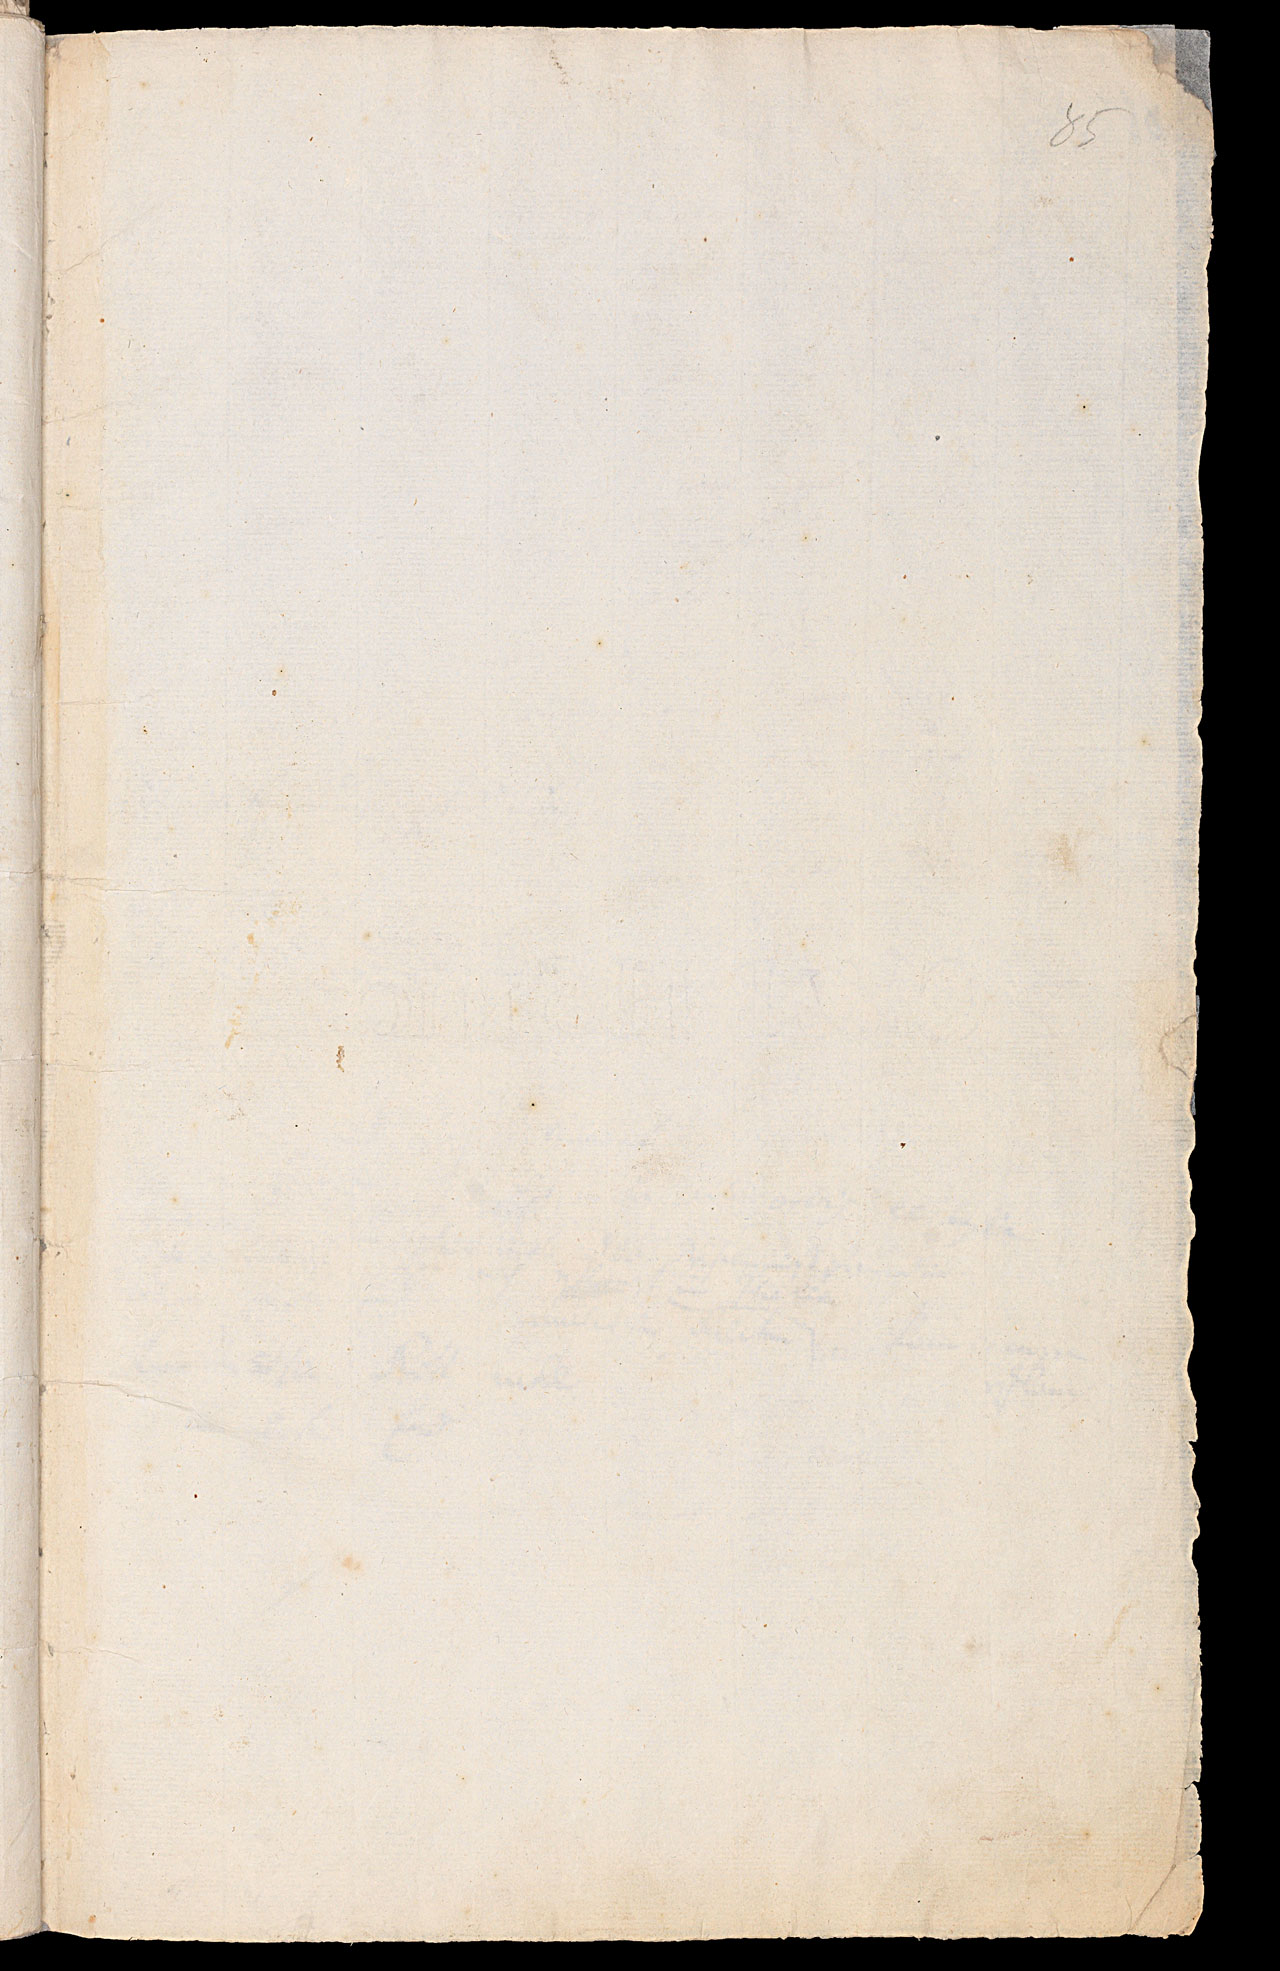 Friedrich Hölderlin, Homburger Folioheft, Seite 85, Handschrift